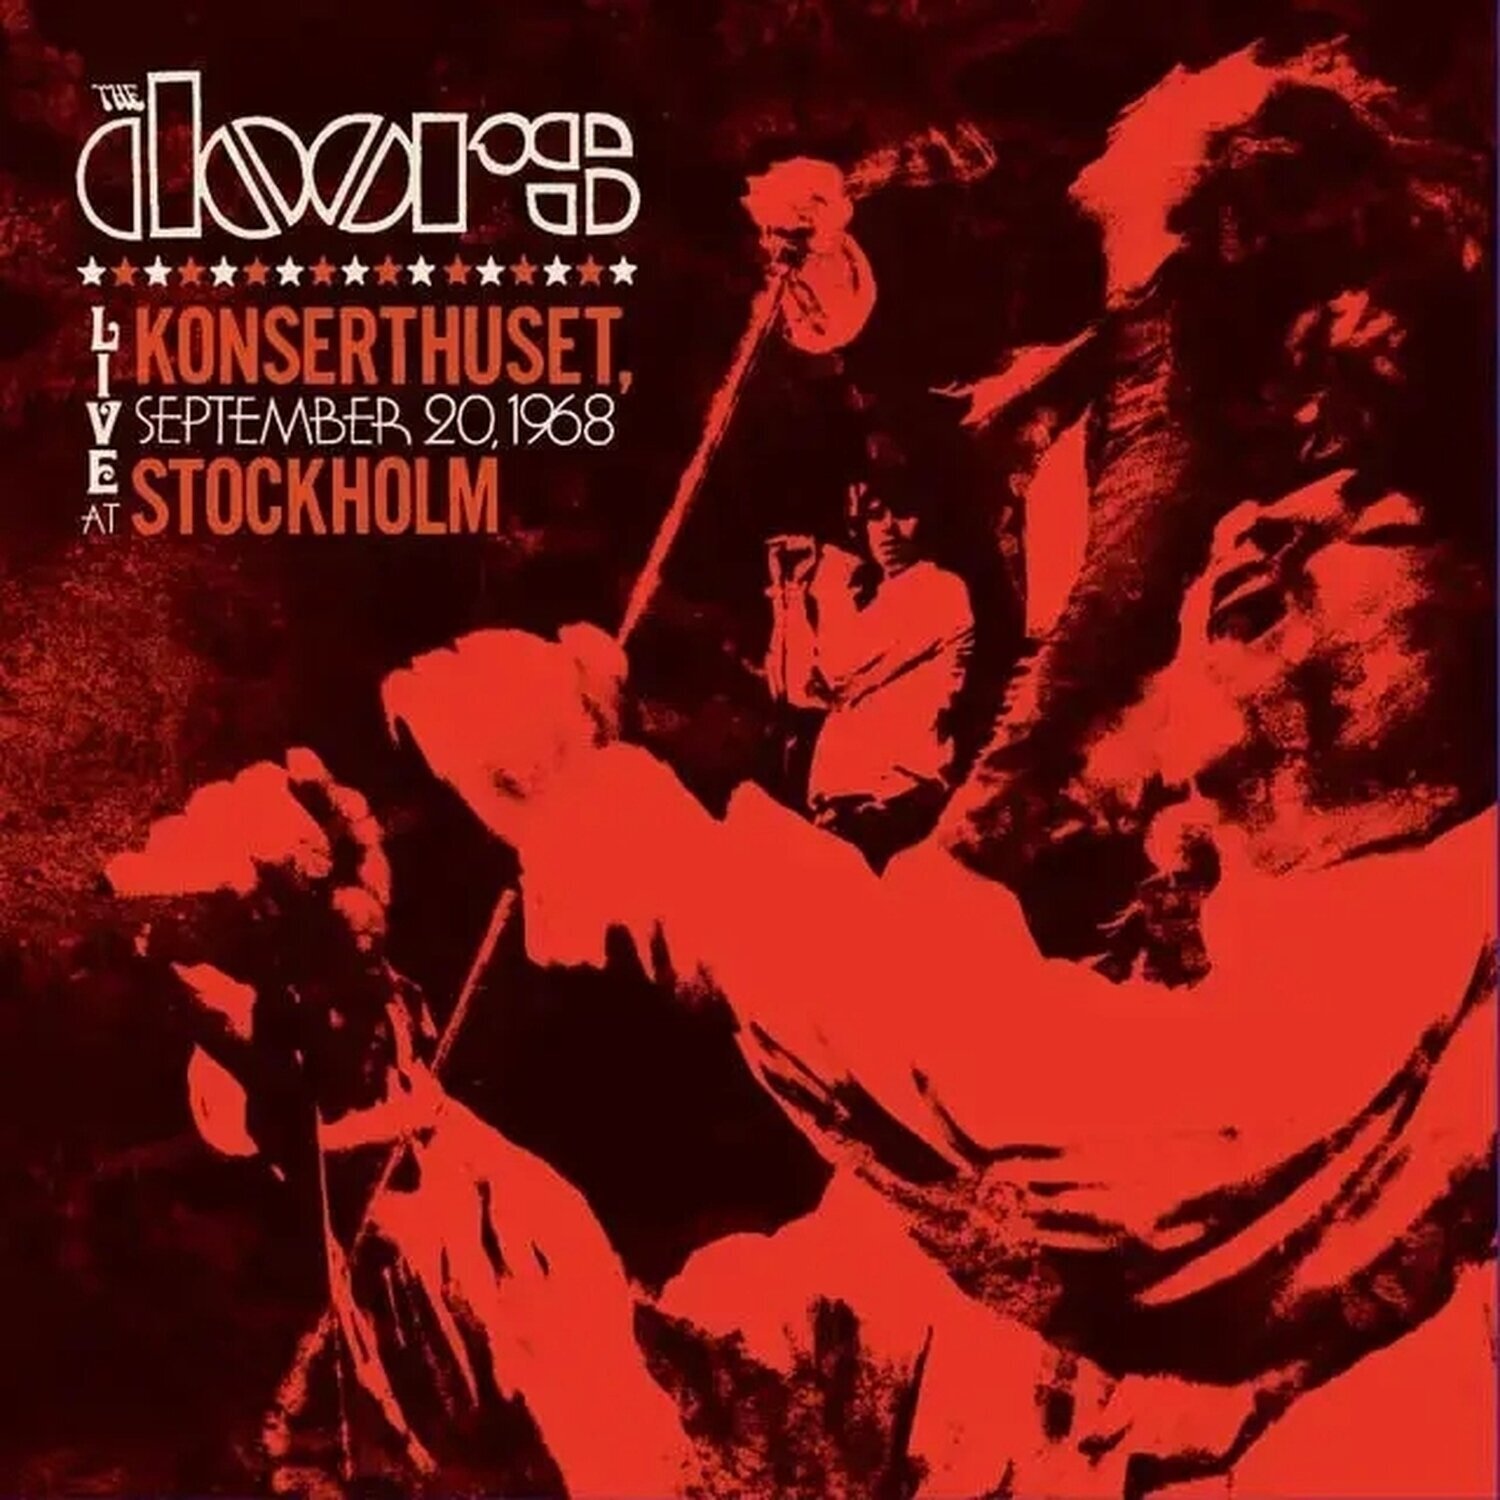 Disco in vinile The Doors - Live At Konserthuset, Stockholm, 1968 (Rsd 2024) (Blue Coloured) (3 LP)